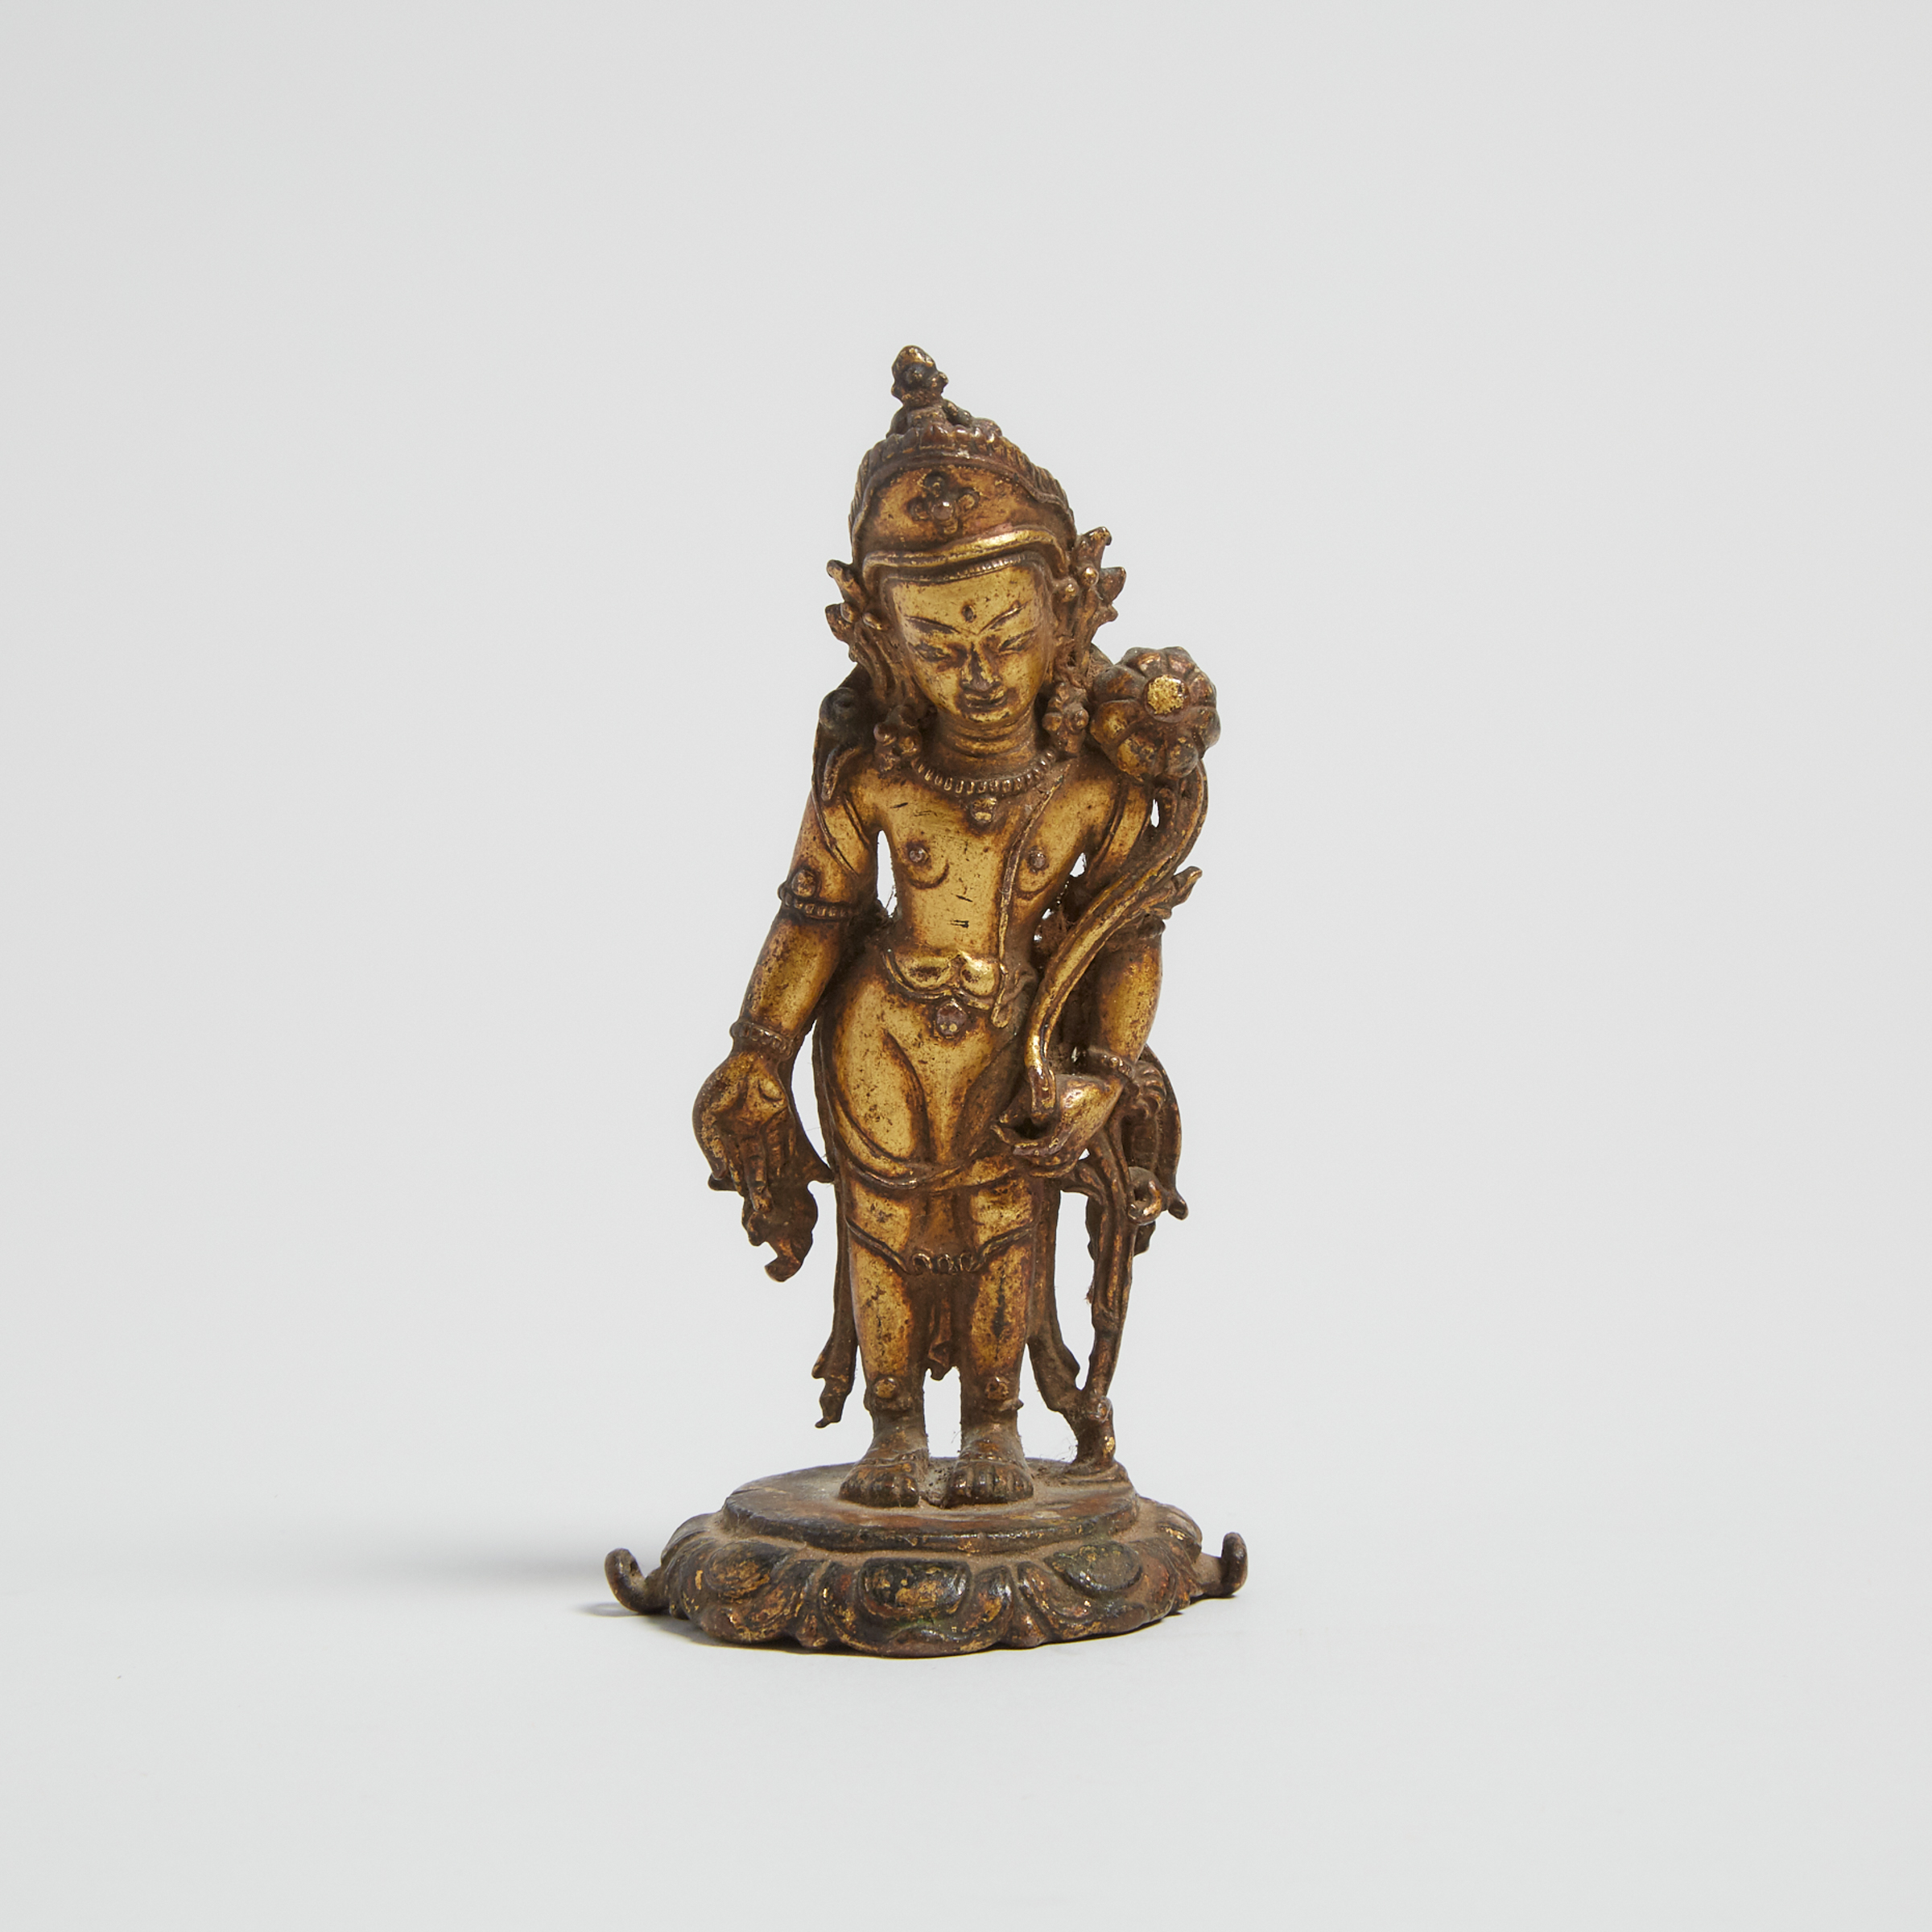 A Small Gilt Bronze Figure of Padmapani, Nepal